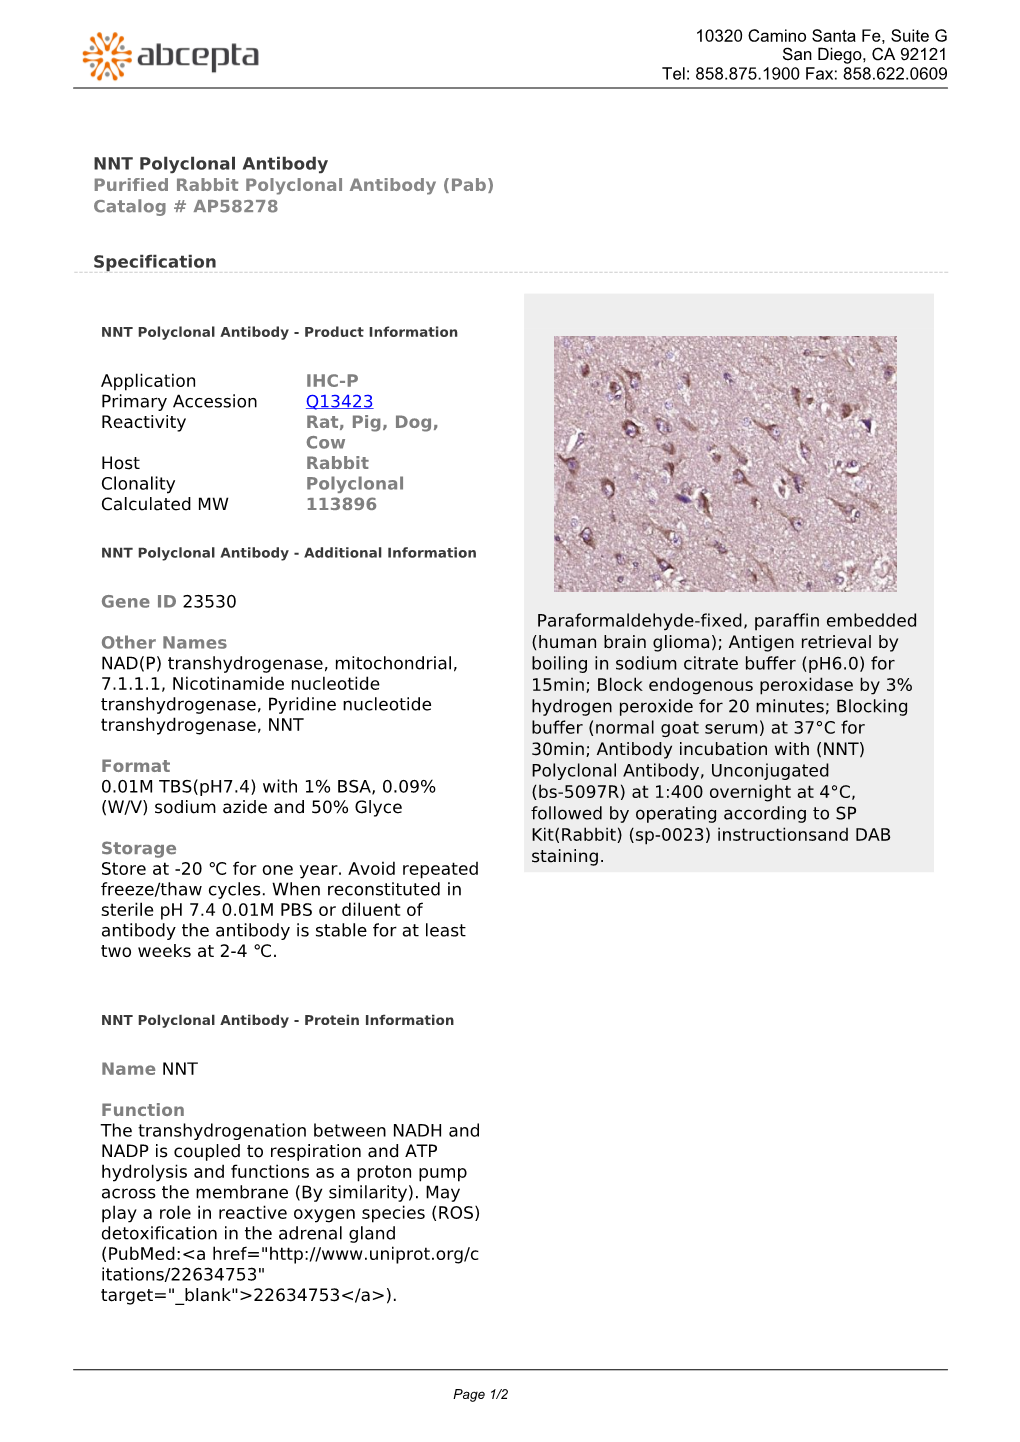 NNT Polyclonal Antibody Purified Rabbit Polyclonal Antibody (Pab) Catalog # AP58278